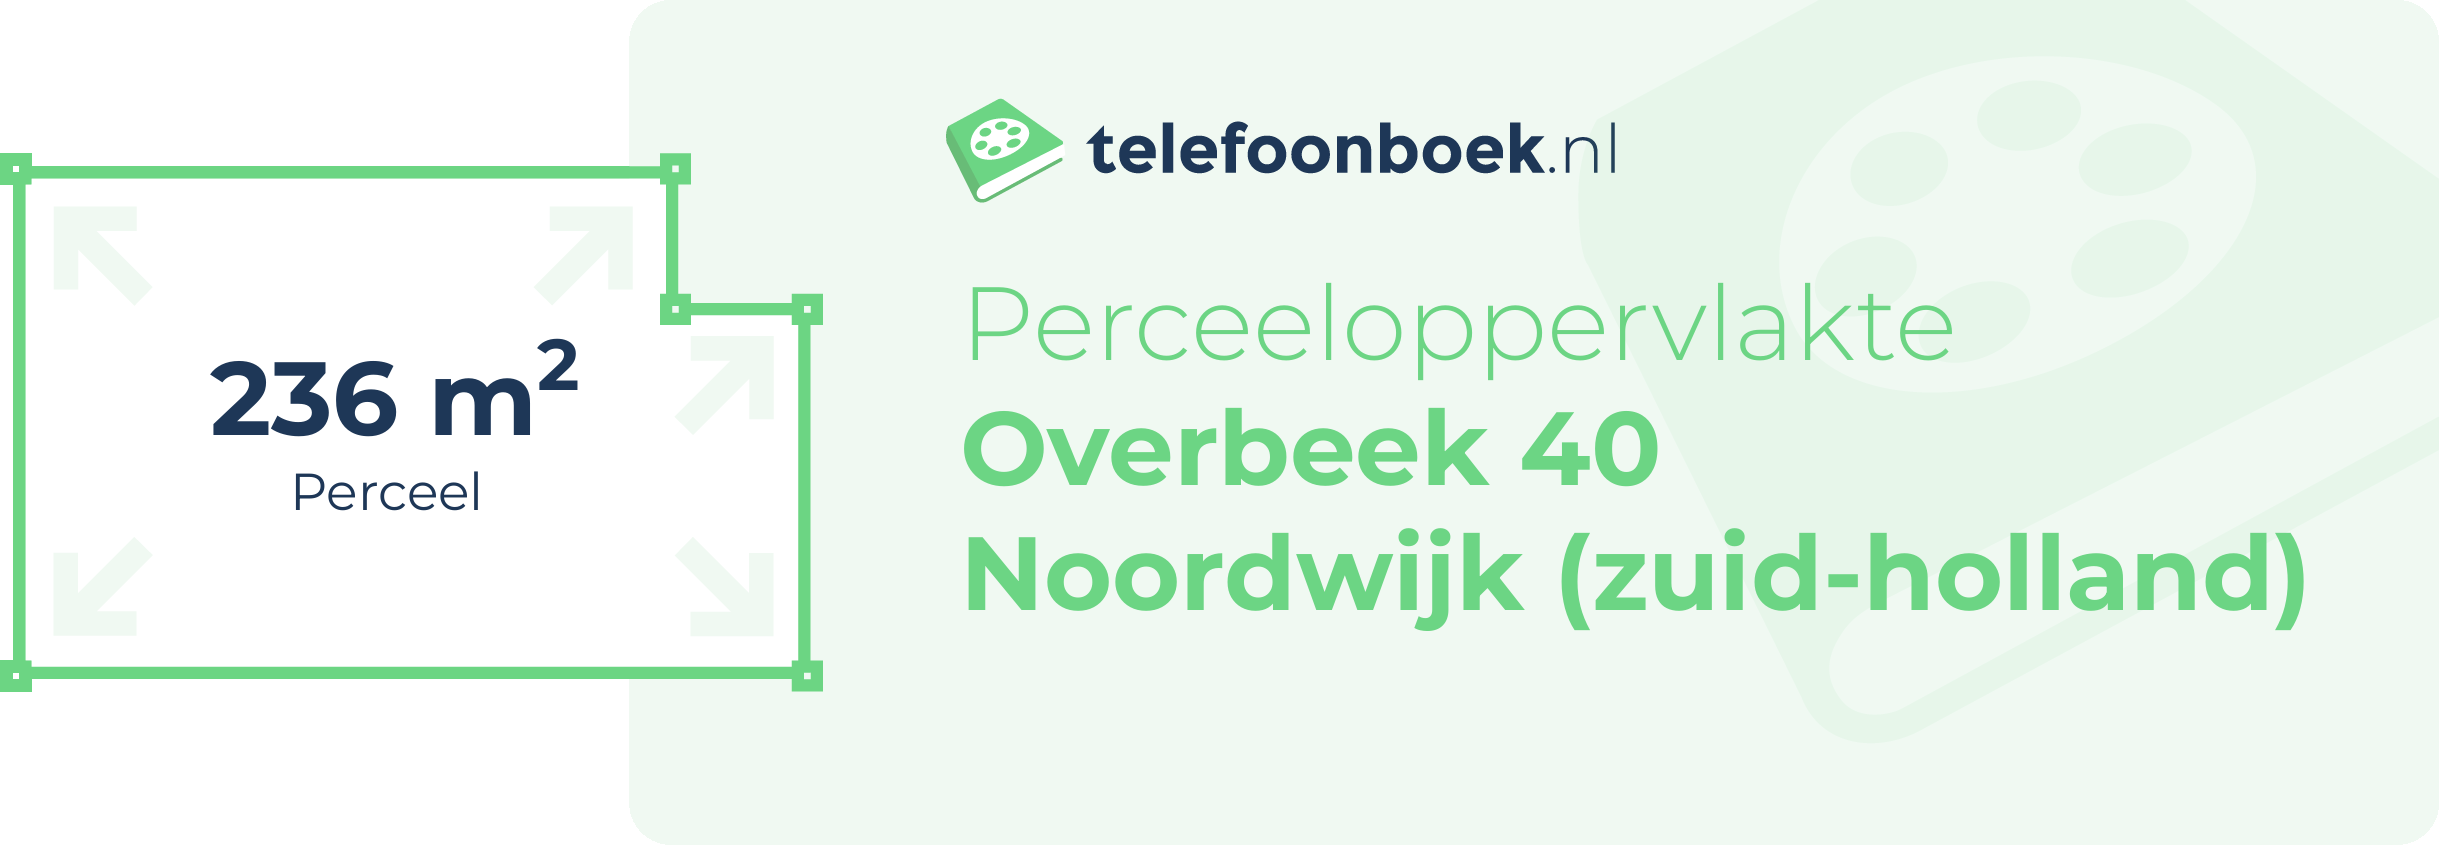 Perceeloppervlakte Overbeek 40 Noordwijk (Zuid-Holland)